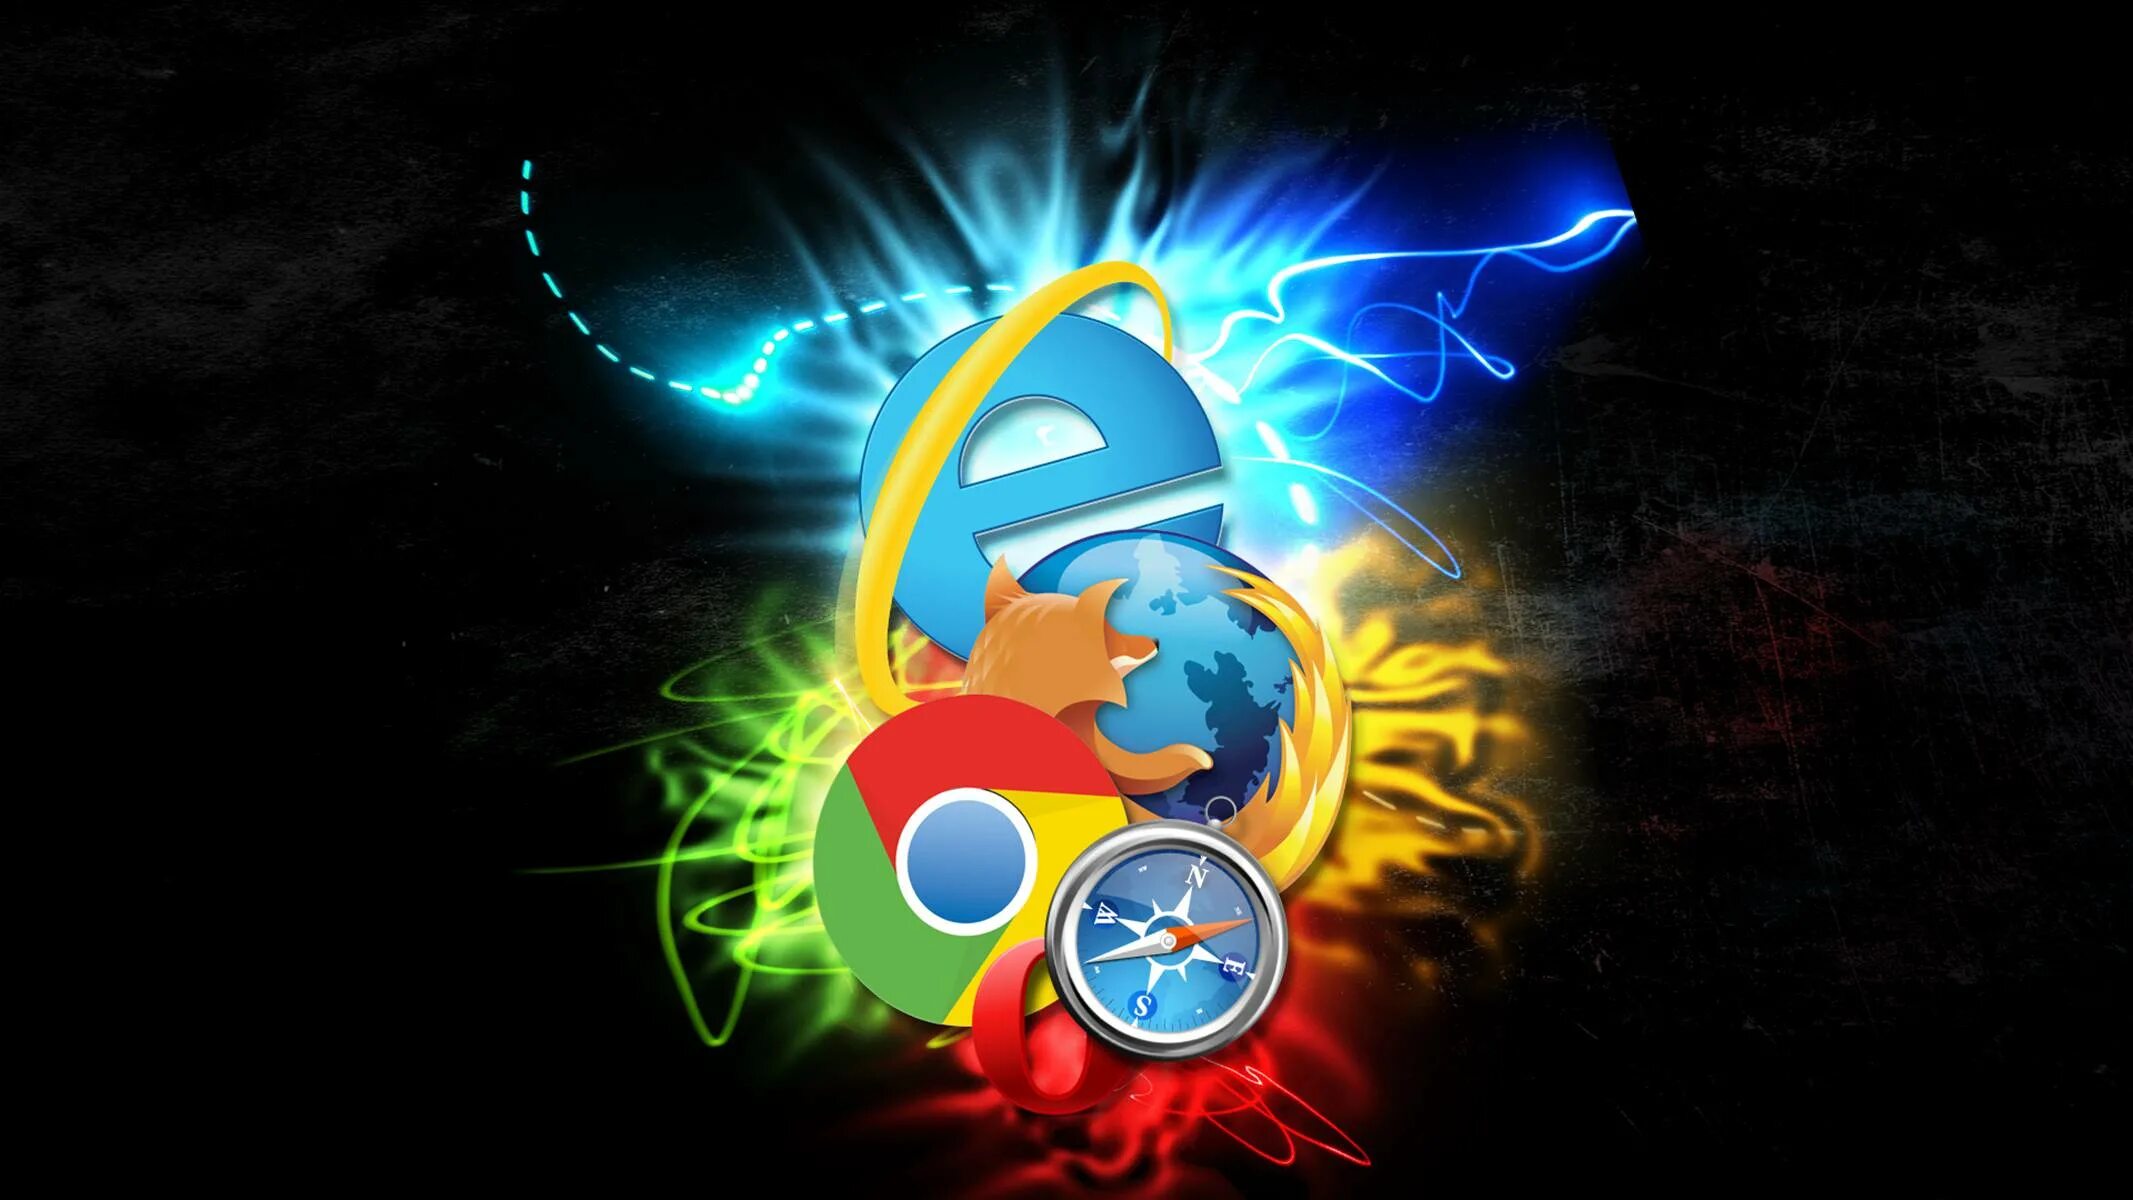 Тема инт. Интернет браузеры. Изображение для браузера. Логотипы интернет браузеров. Фон для браузера.